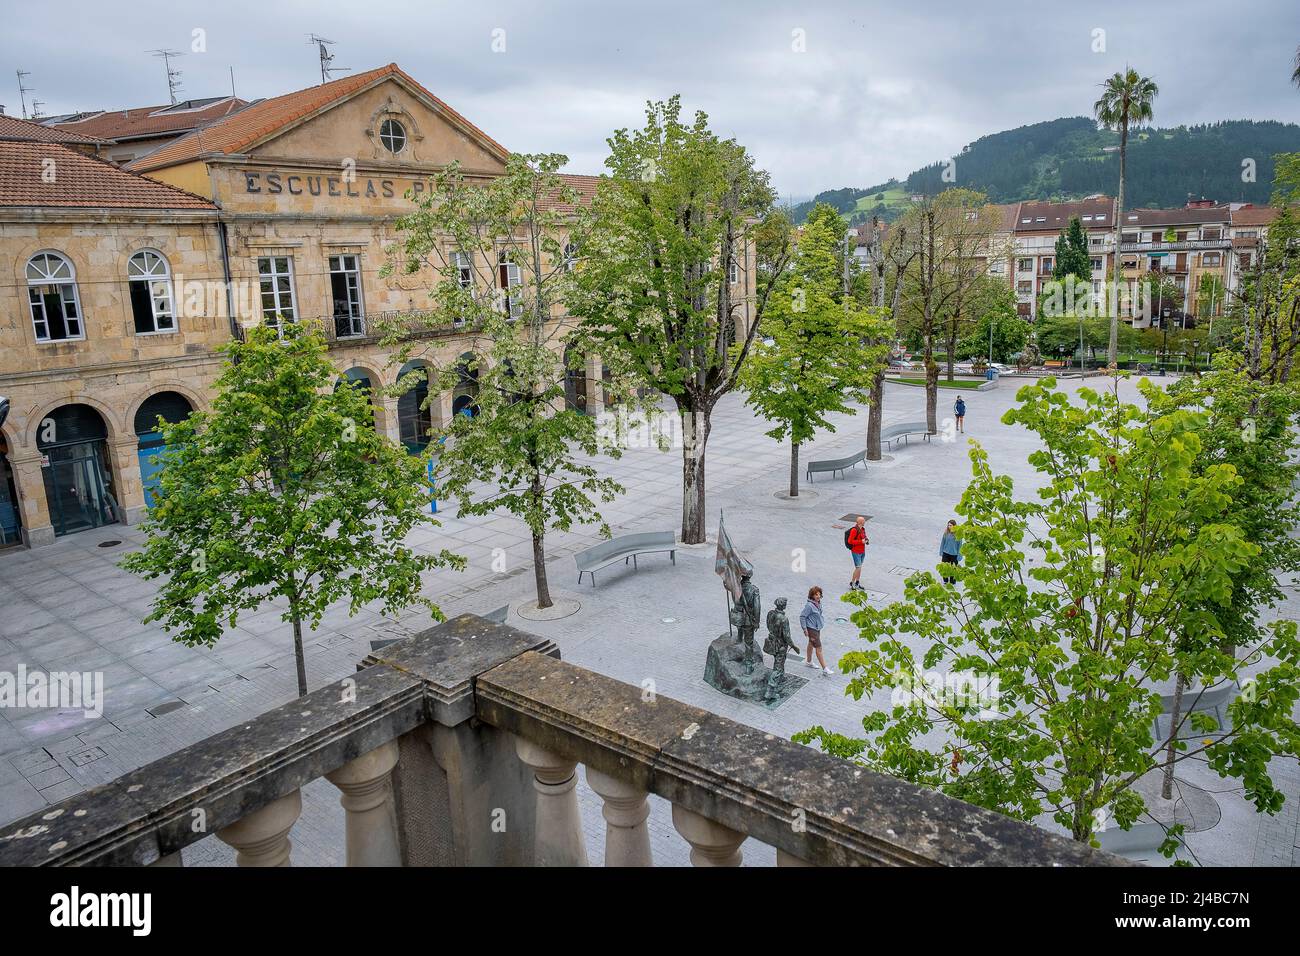 Pasileku, Gernika-Lumo, Basque Country, Spain Stock Photo